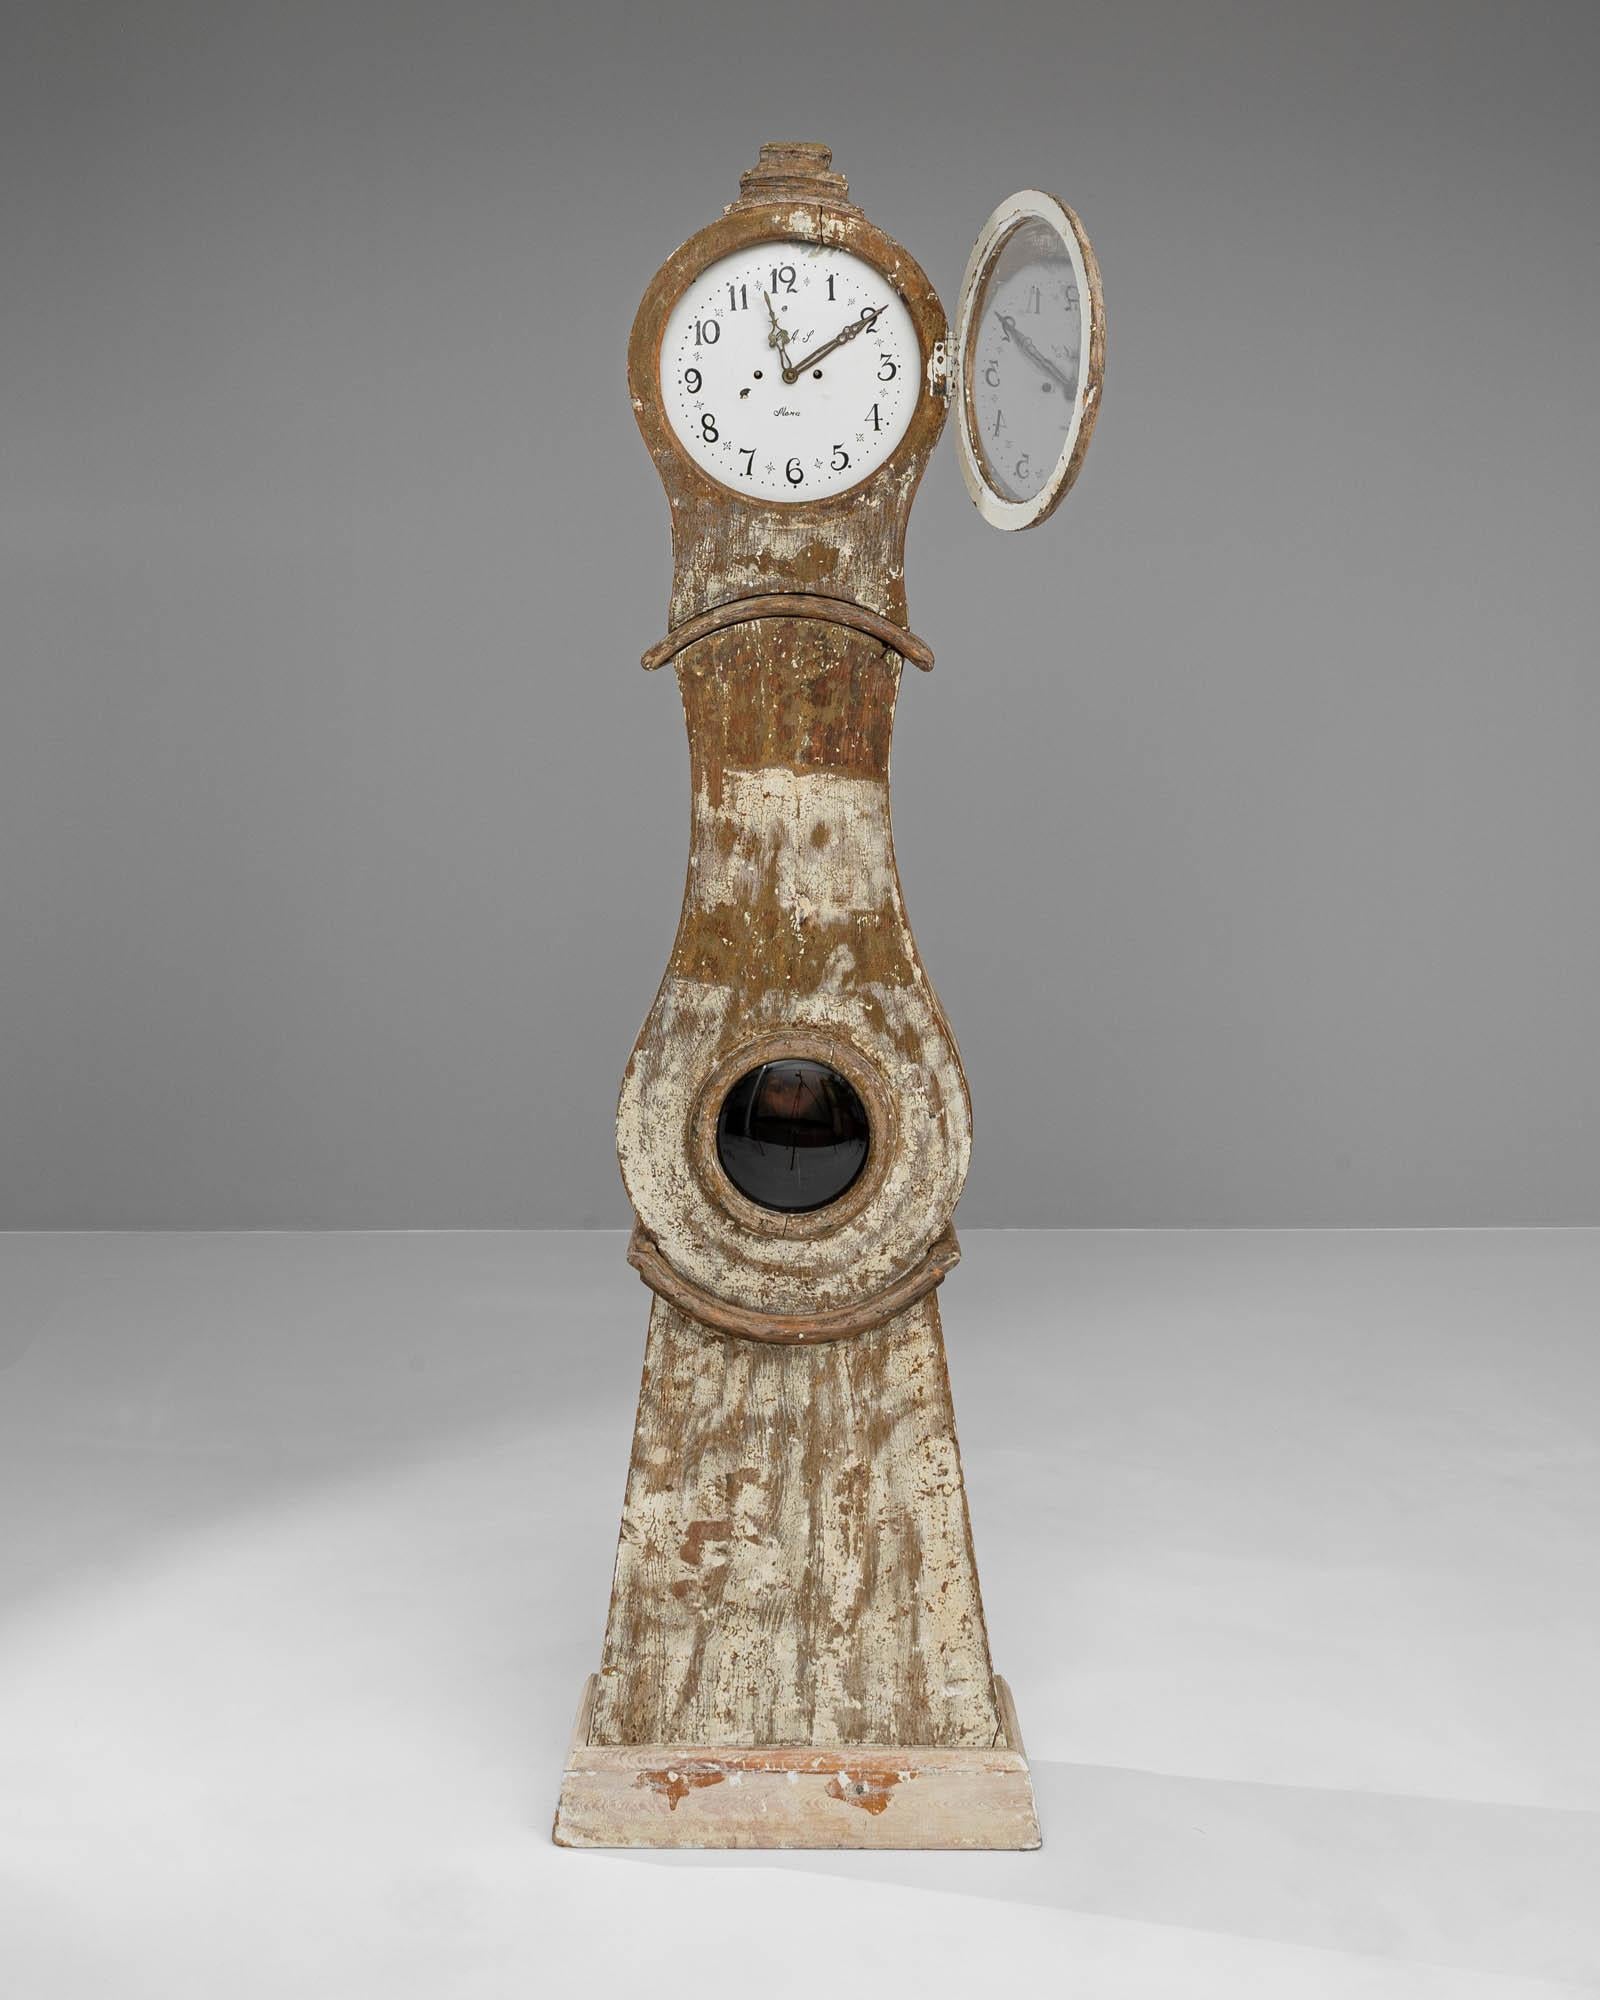 Cette horloge suédoise en bois du début du XIXe siècle, objet d'art imprégné d'un sens du temps et de la tradition, évoque les chuchotements de l'histoire. Sa présence majestueuse est accentuée par le charme rustique du bois usé par les intempéries,